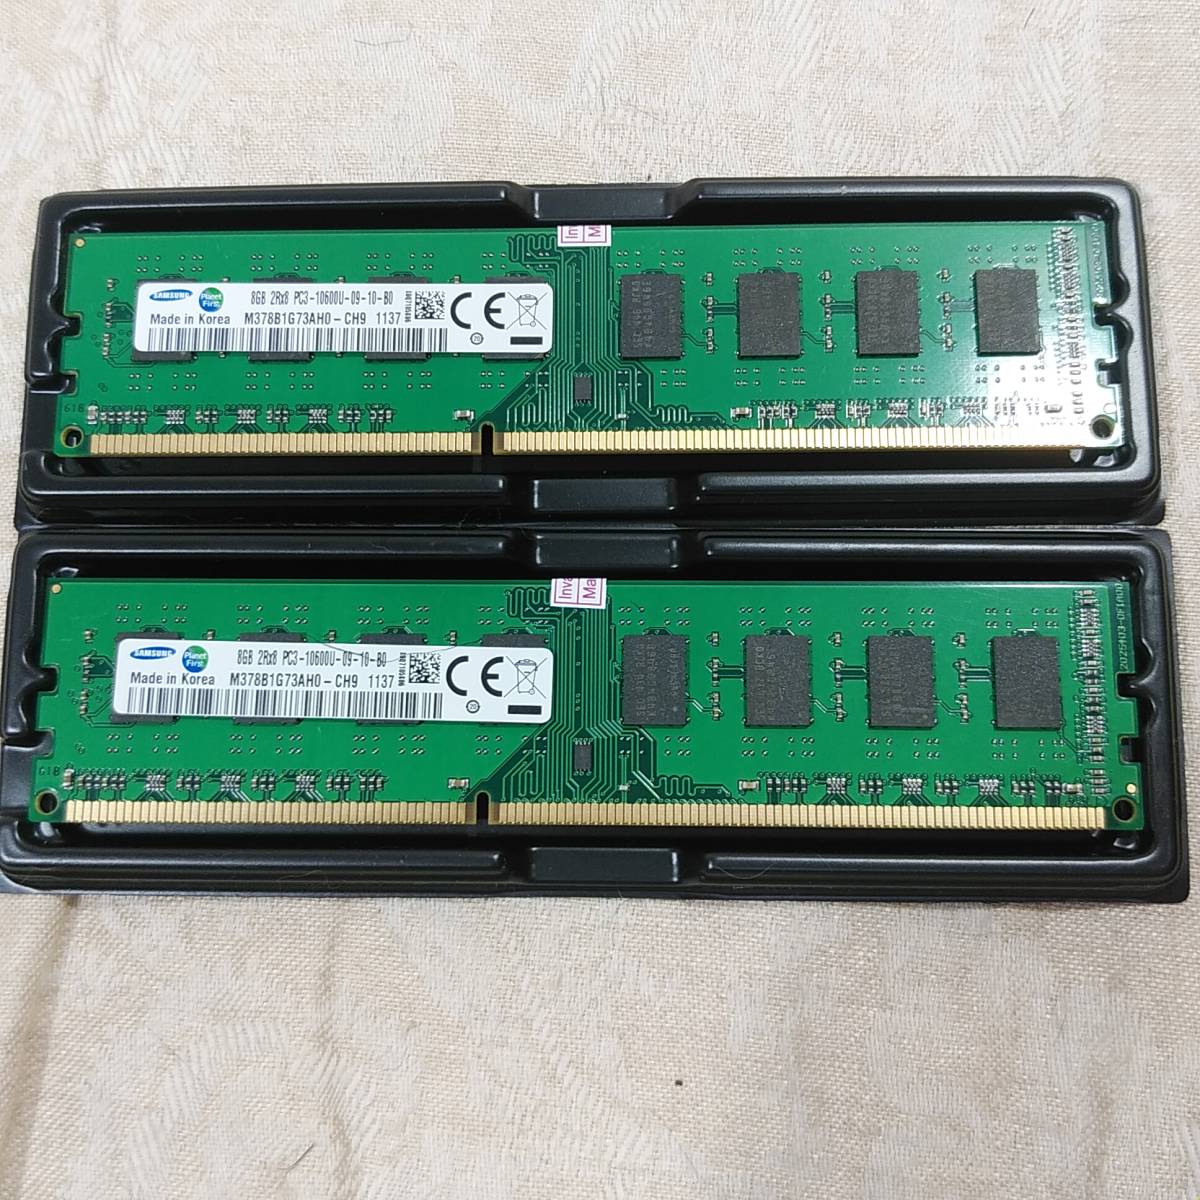 新品未使用 SAMSUNG サムスン 16GBメモリ(8GB×2枚) PC3-10600U 2RX8 DDR3/1333MHz 1.5VメモリRAM CL9 DIMMデスクトップ 送料無料